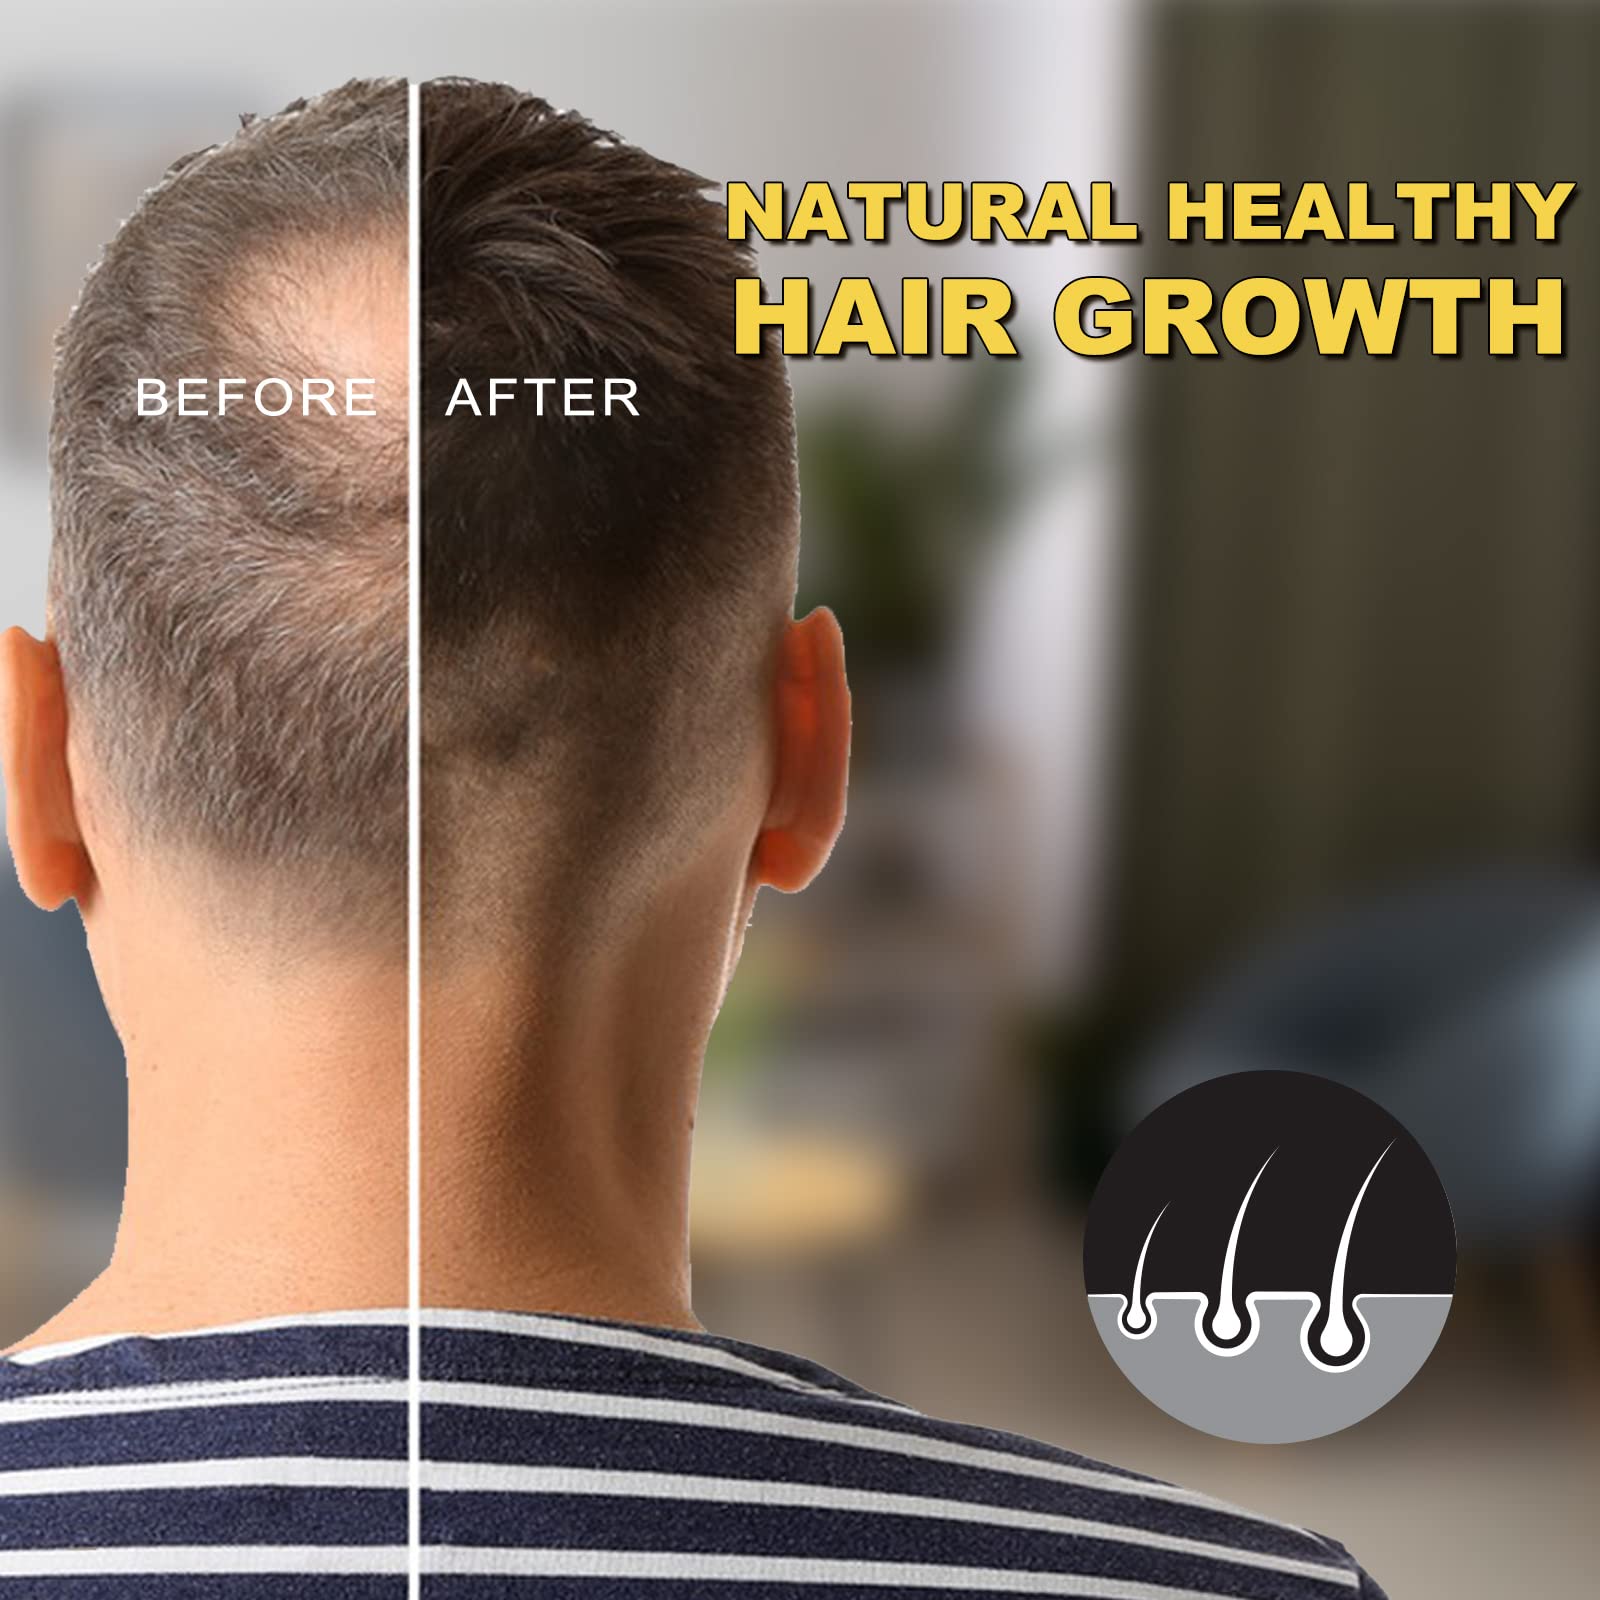 5% Minoxidil for Men and Women Hair Growth Oil, Biotin Hair Growth Serum Hair Regrowth Treatment for Scalp Hair Loss Hair Thinning, Natural Hair Growth for Thicker Longer Fuller Healthier Hair 2.02 oz